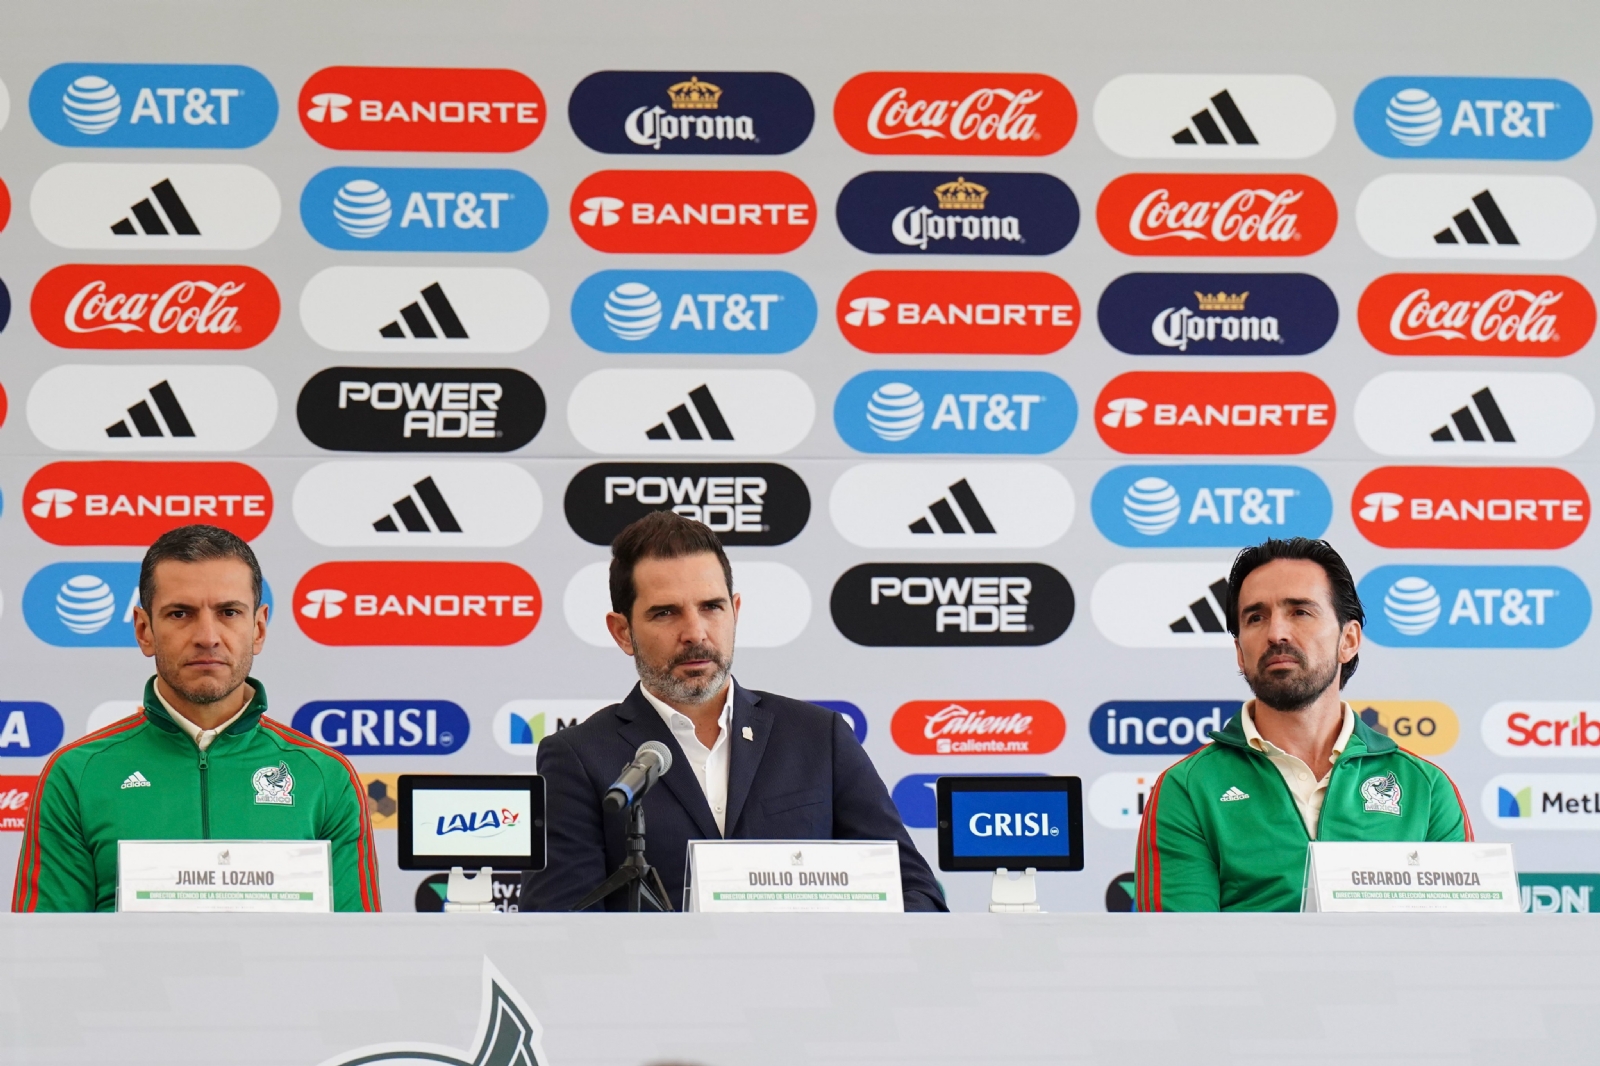 Femexfut PONE META a la Selección Mexicana para su participación en el Mundial del 2026